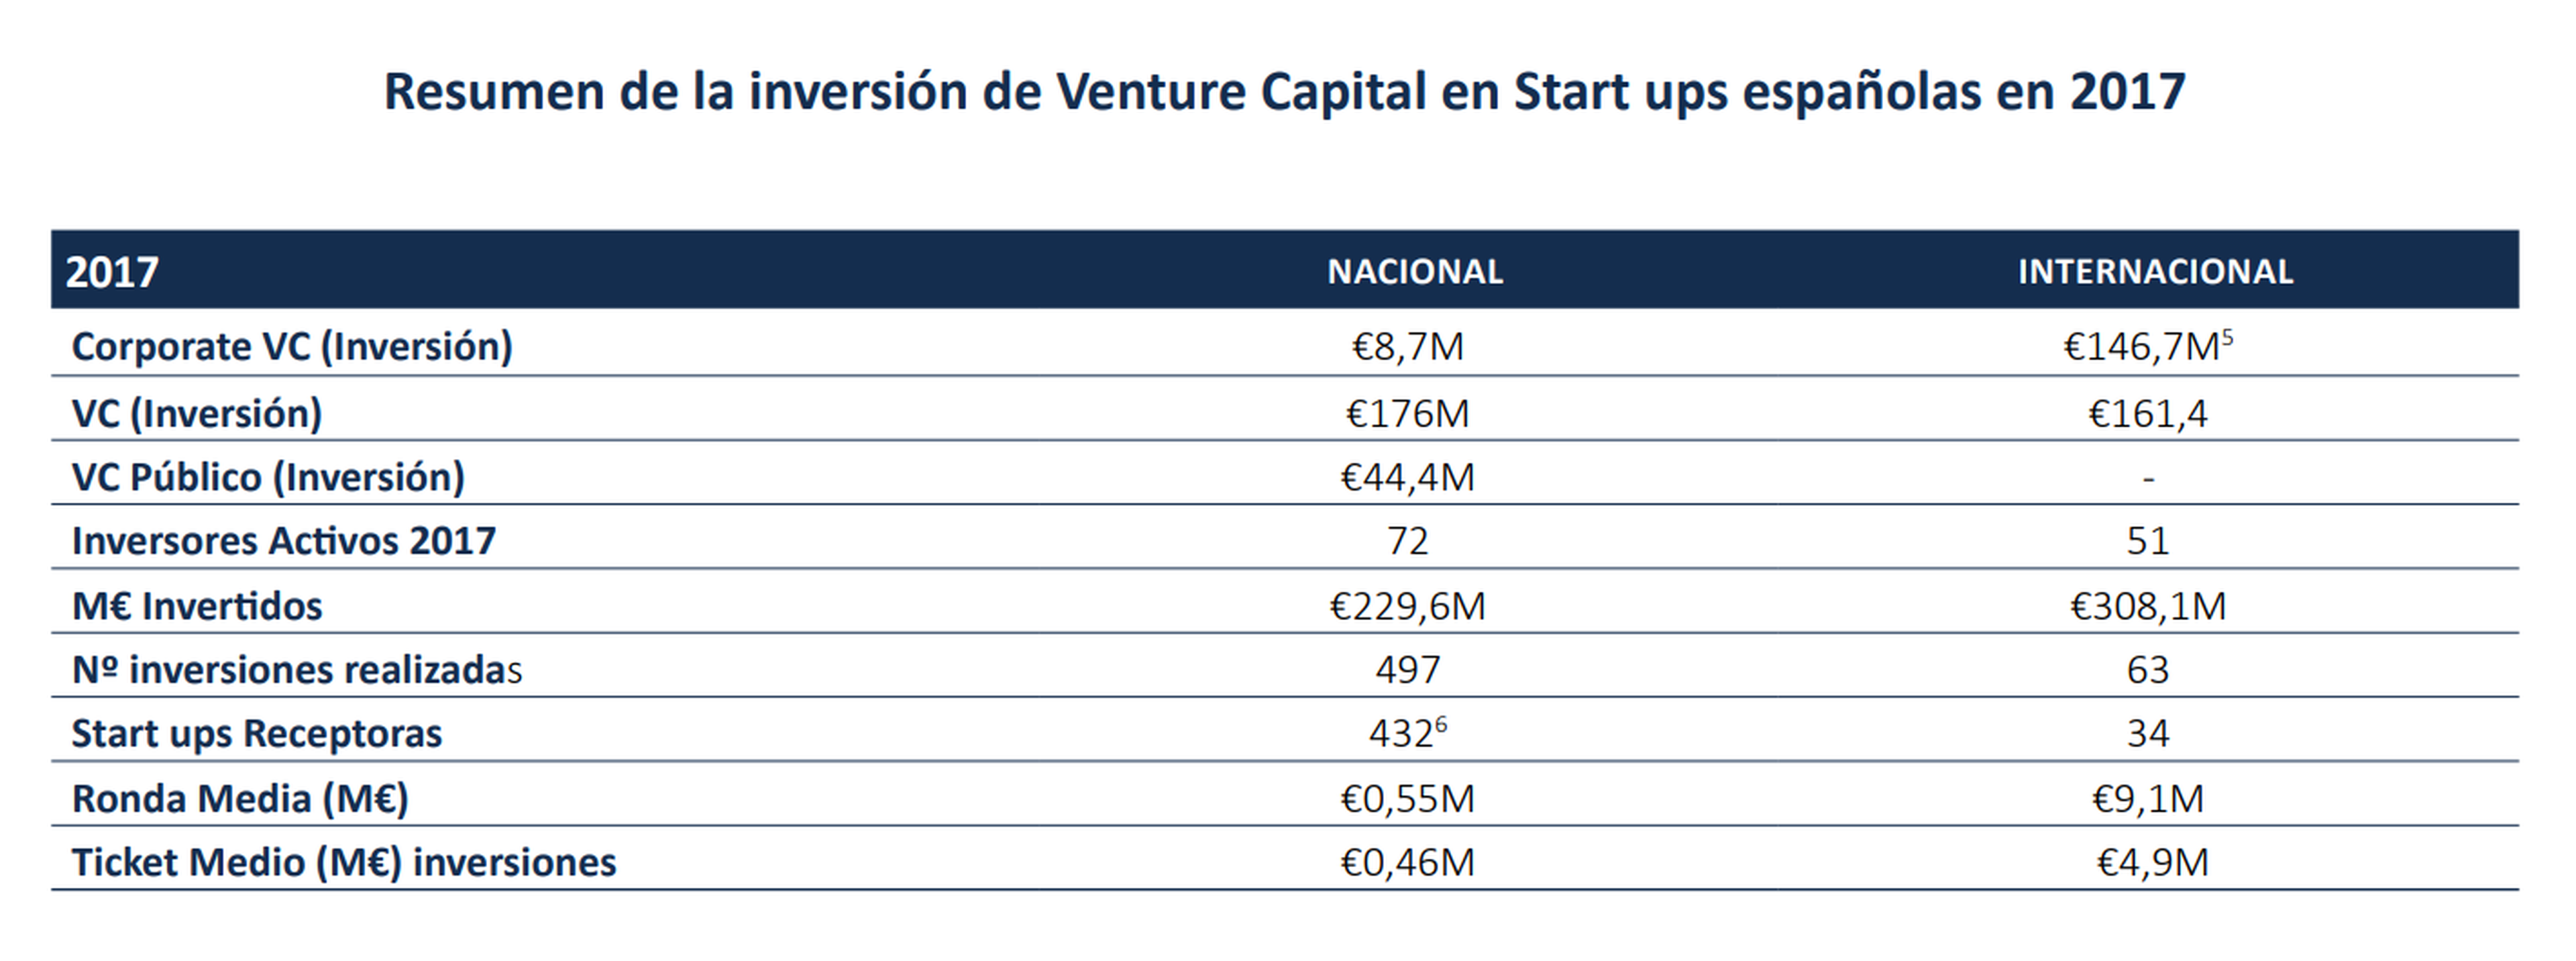 Resumen inversión venture capital en startups españolas en 2017